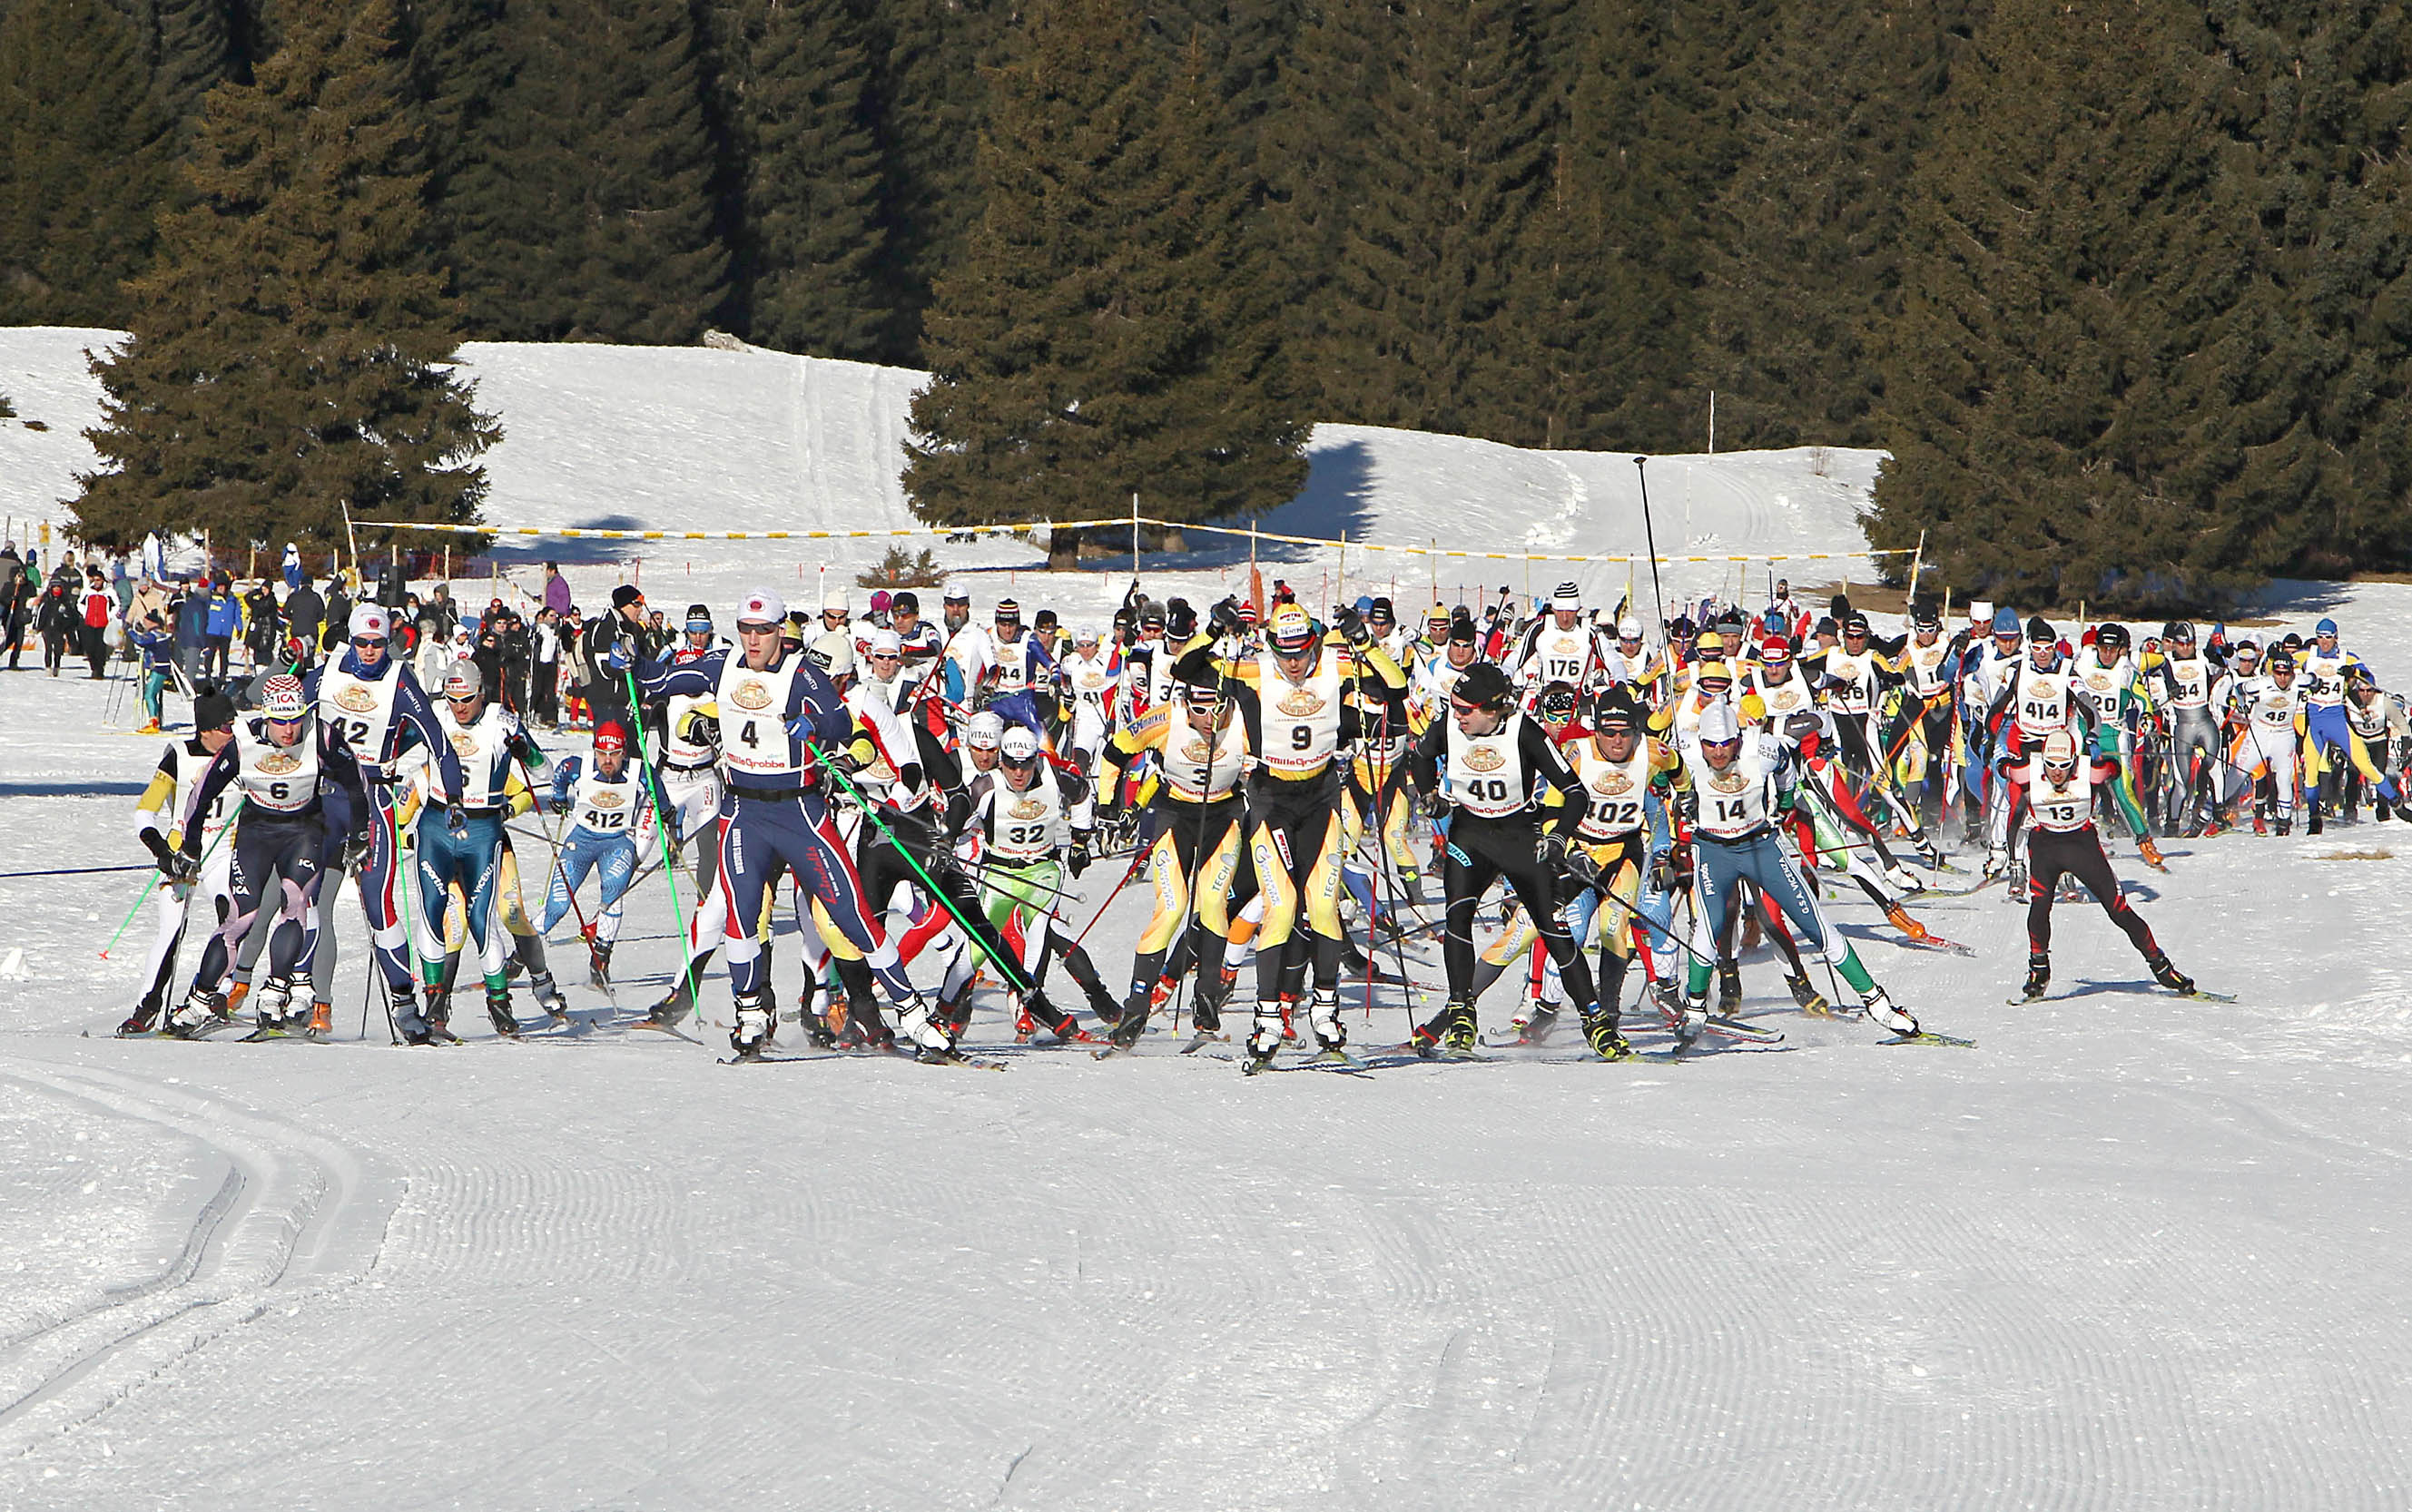 Granfondo Millegrobbe in Trentino, tutto pronto per l’edizione 2013